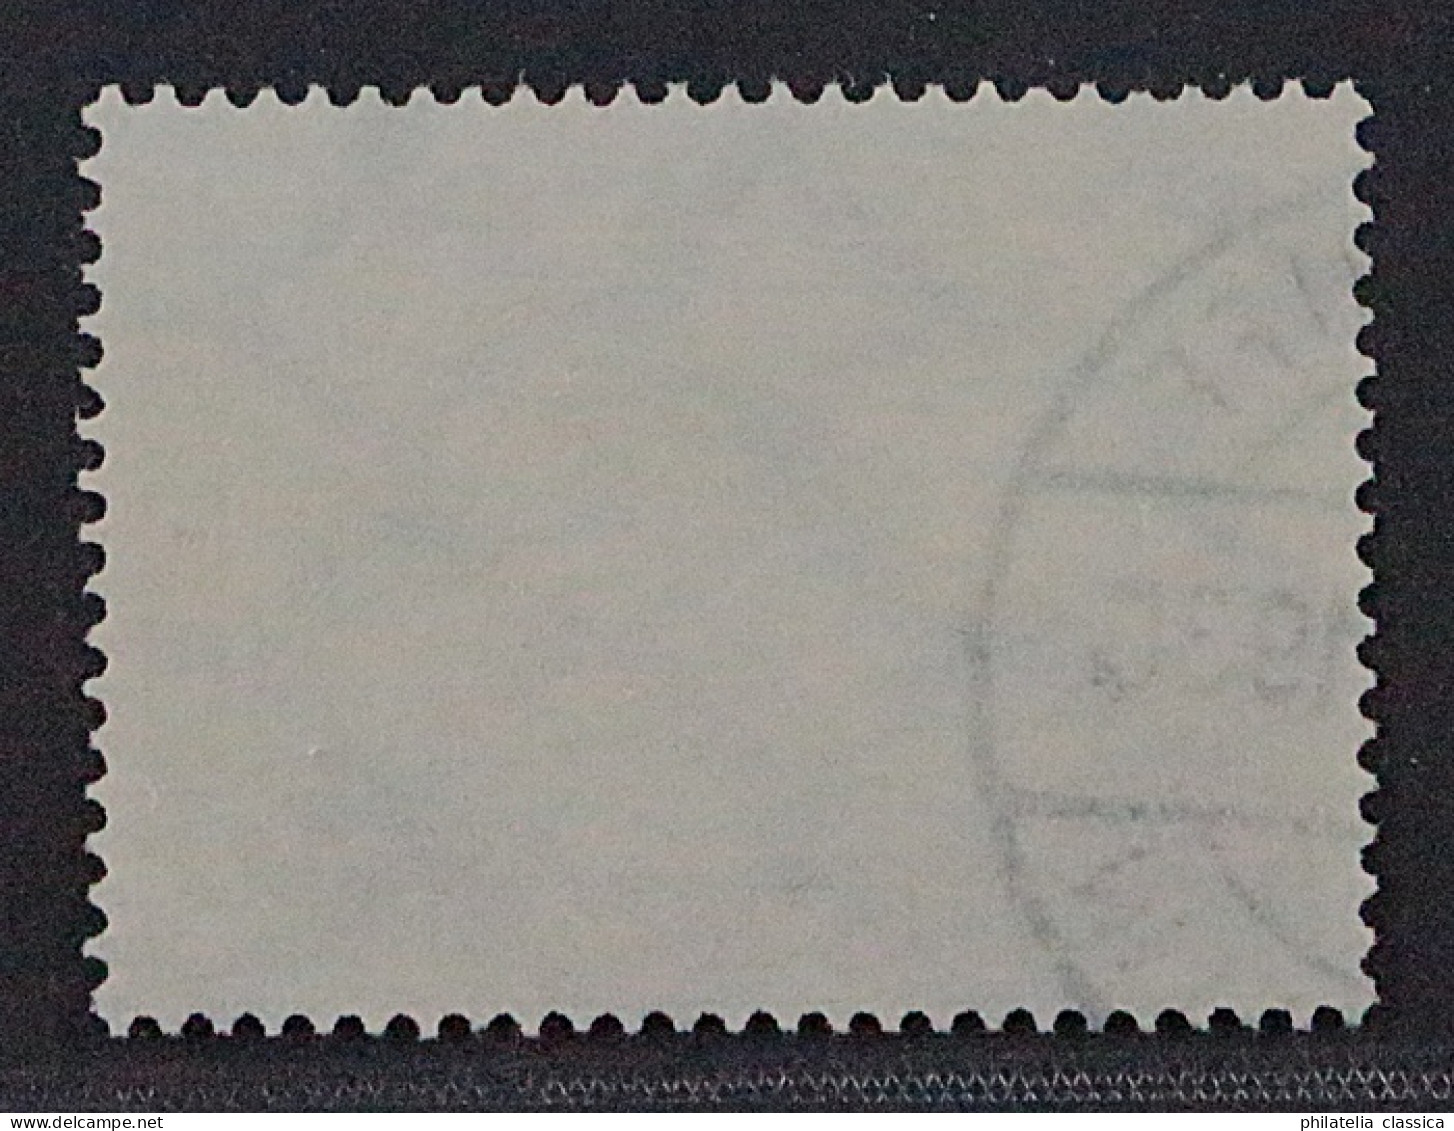 Deutsches Reich 438 Y, 1930, Südamerikafahrt 2 RM, Sauber Gestempelt, 400,-€ - Used Stamps